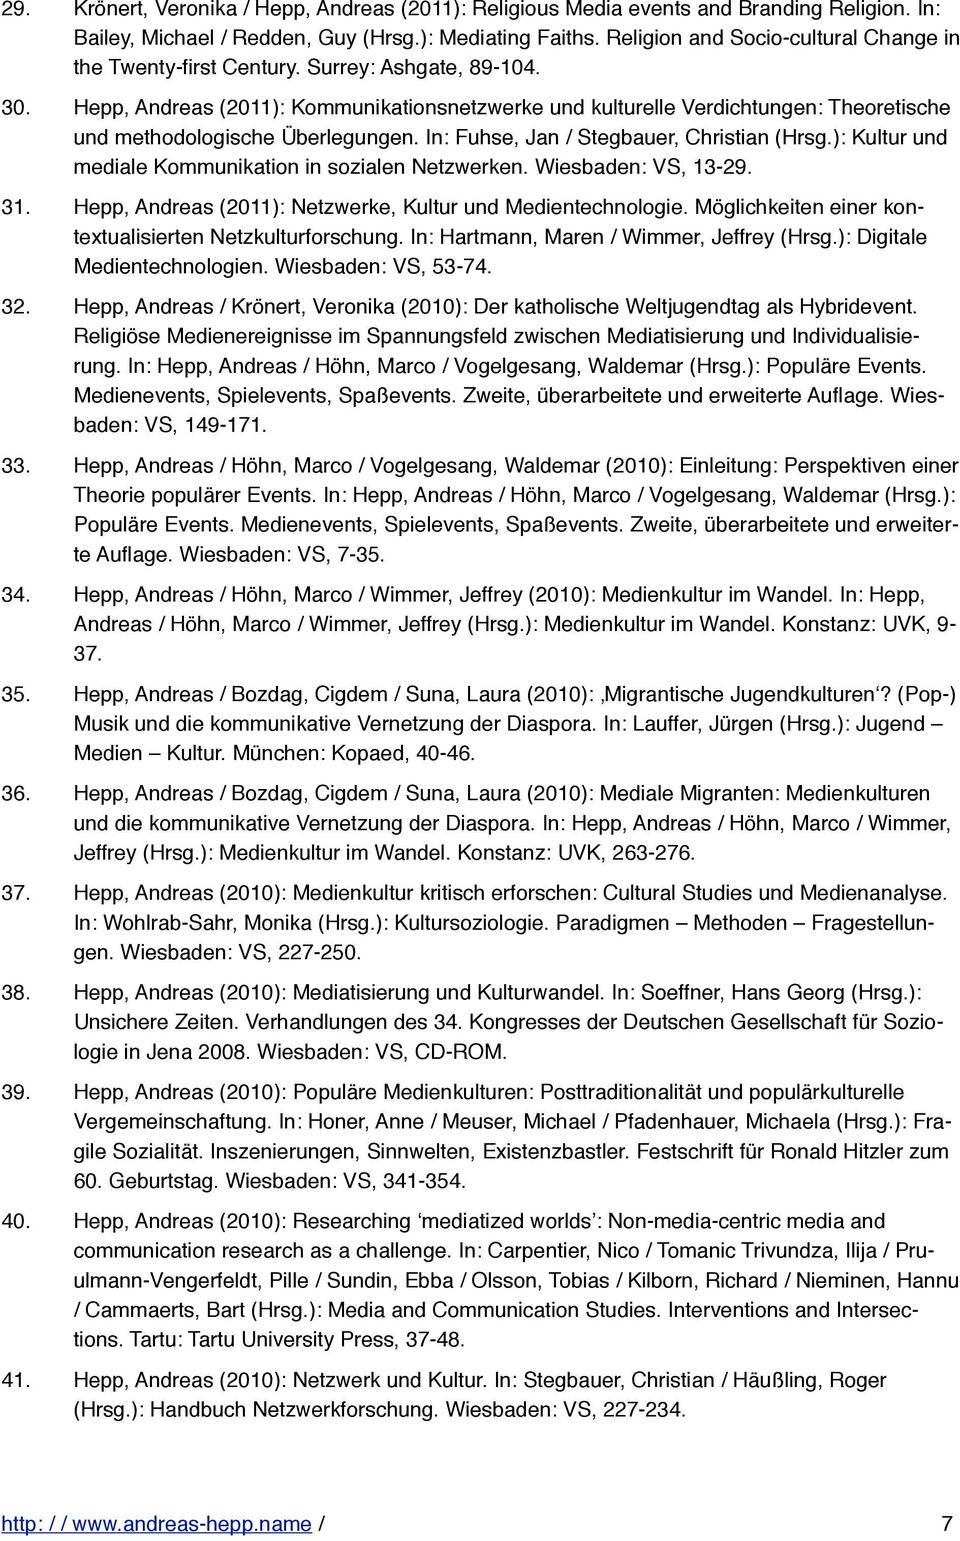 Hepp, Andreas (2011): Kommunikationsnetzwerke und kulturelle Verdichtungen: Theoretische und methodologische Überlegungen. In: Fuhse, Jan / Stegbauer, Christian (Hrsg.